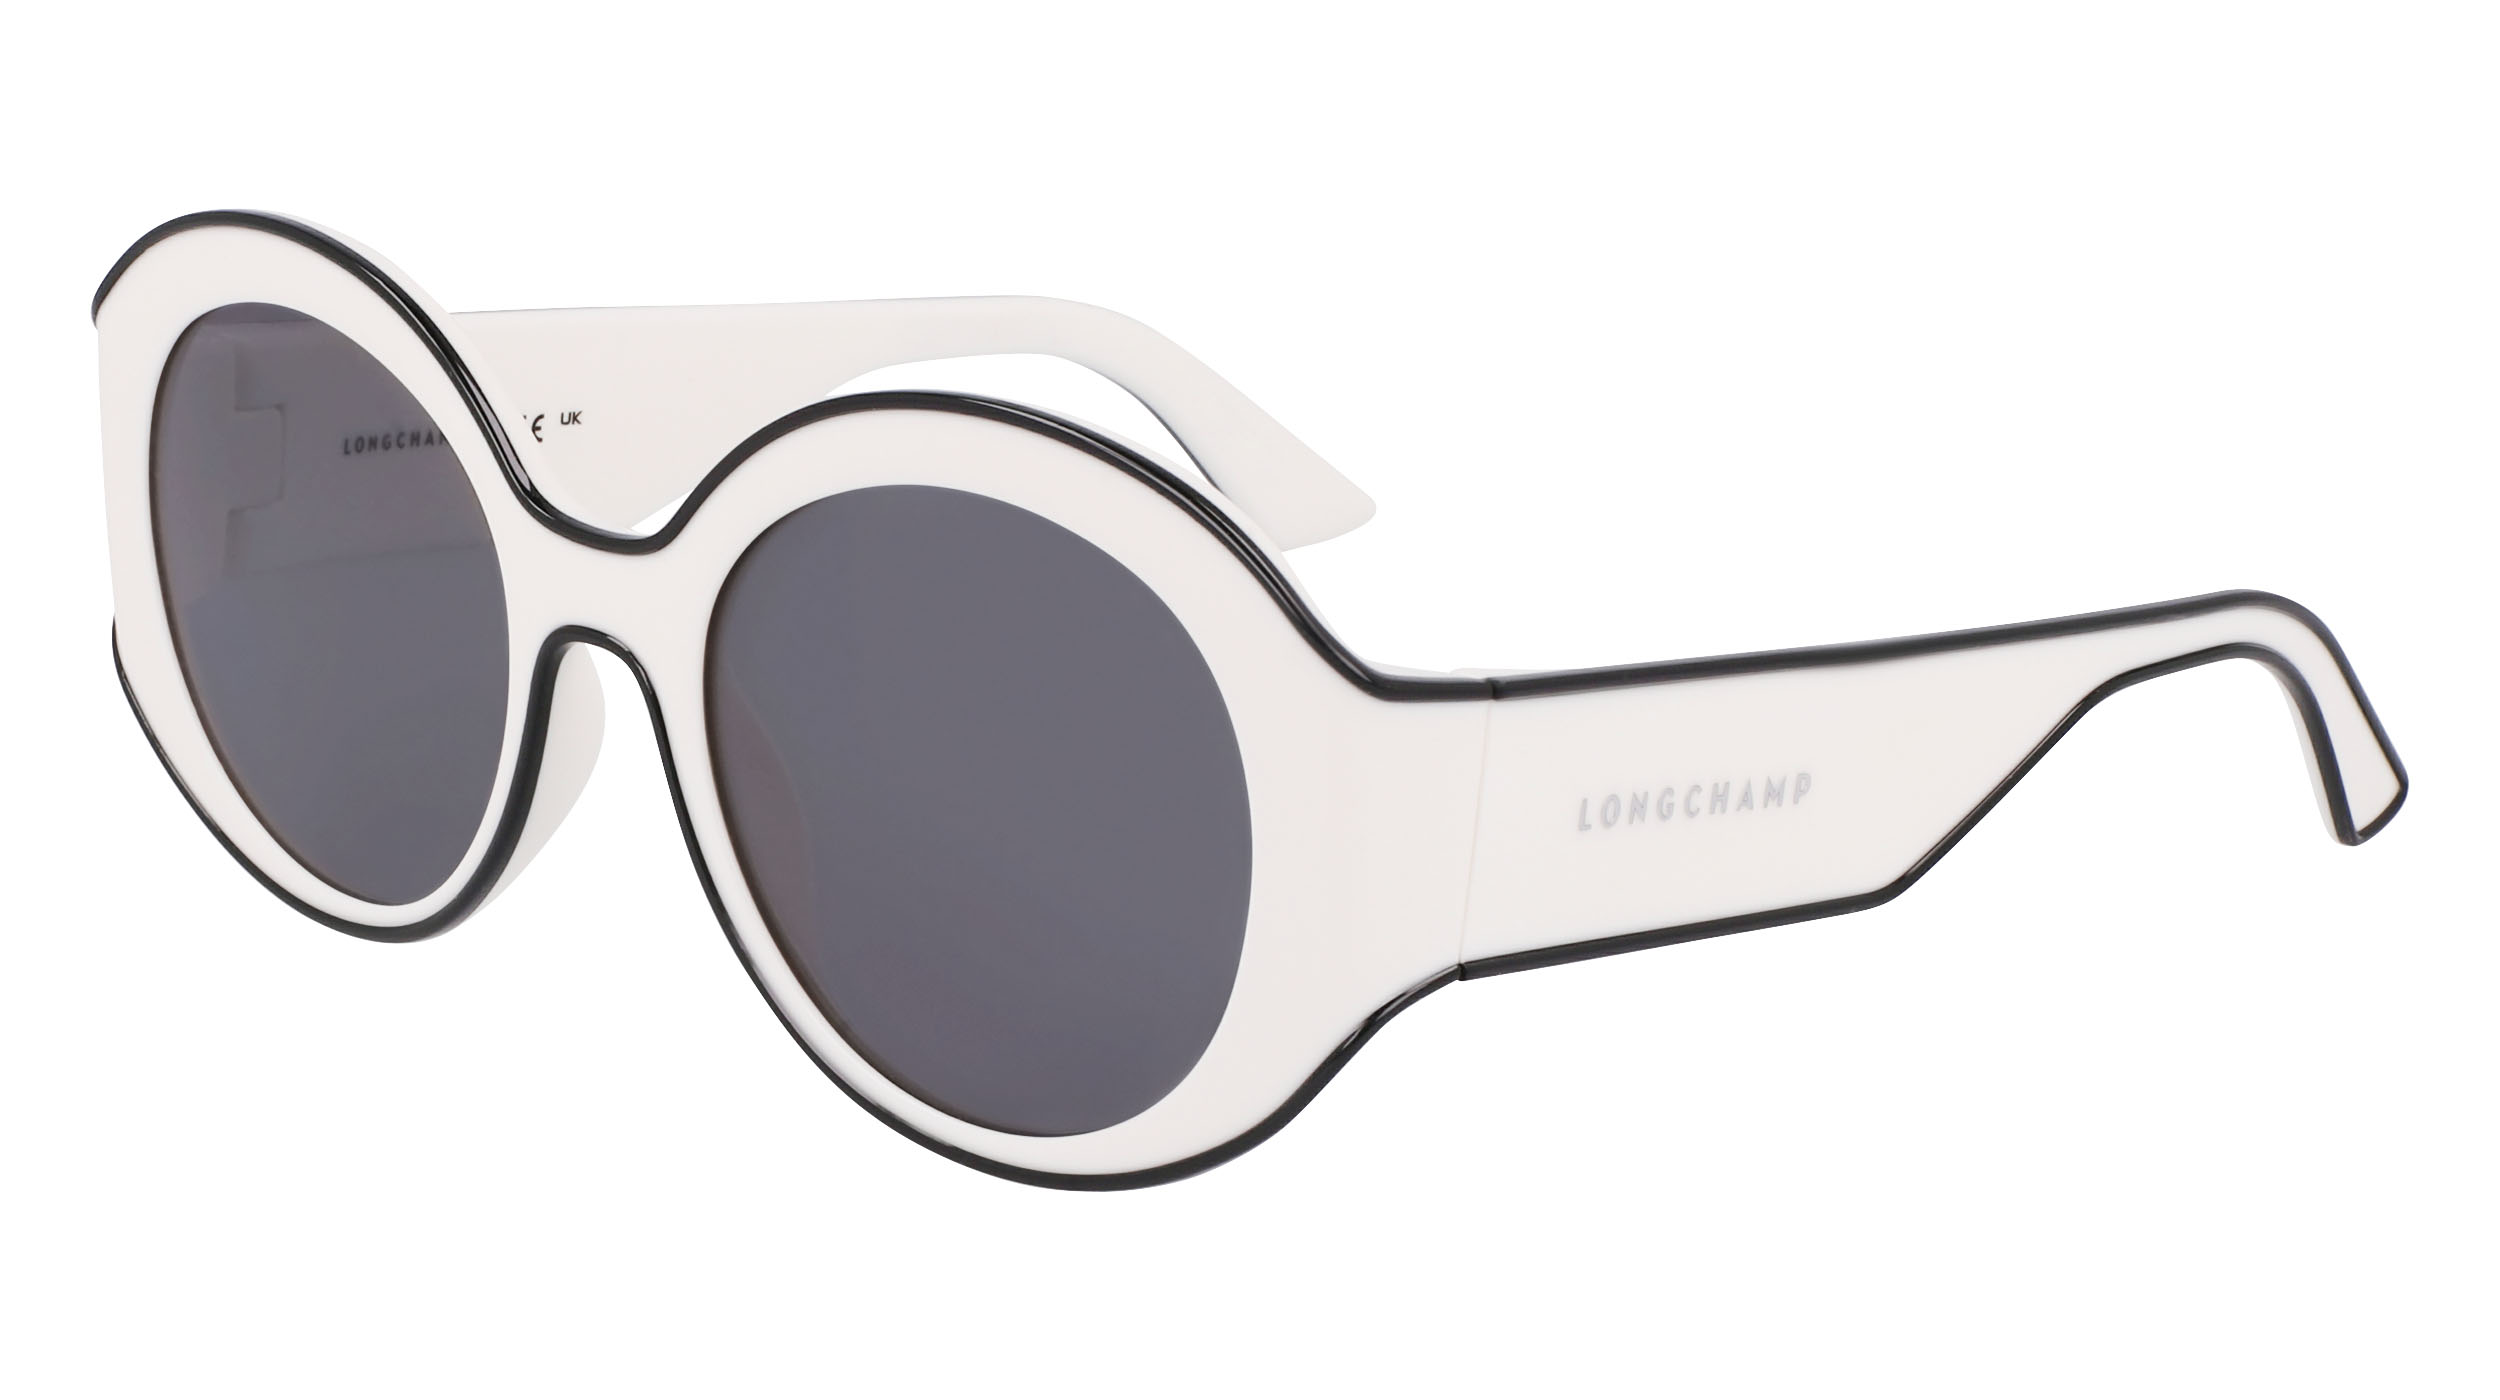 Sunglasses Longchamp Lo758s, gold colour - Doyle